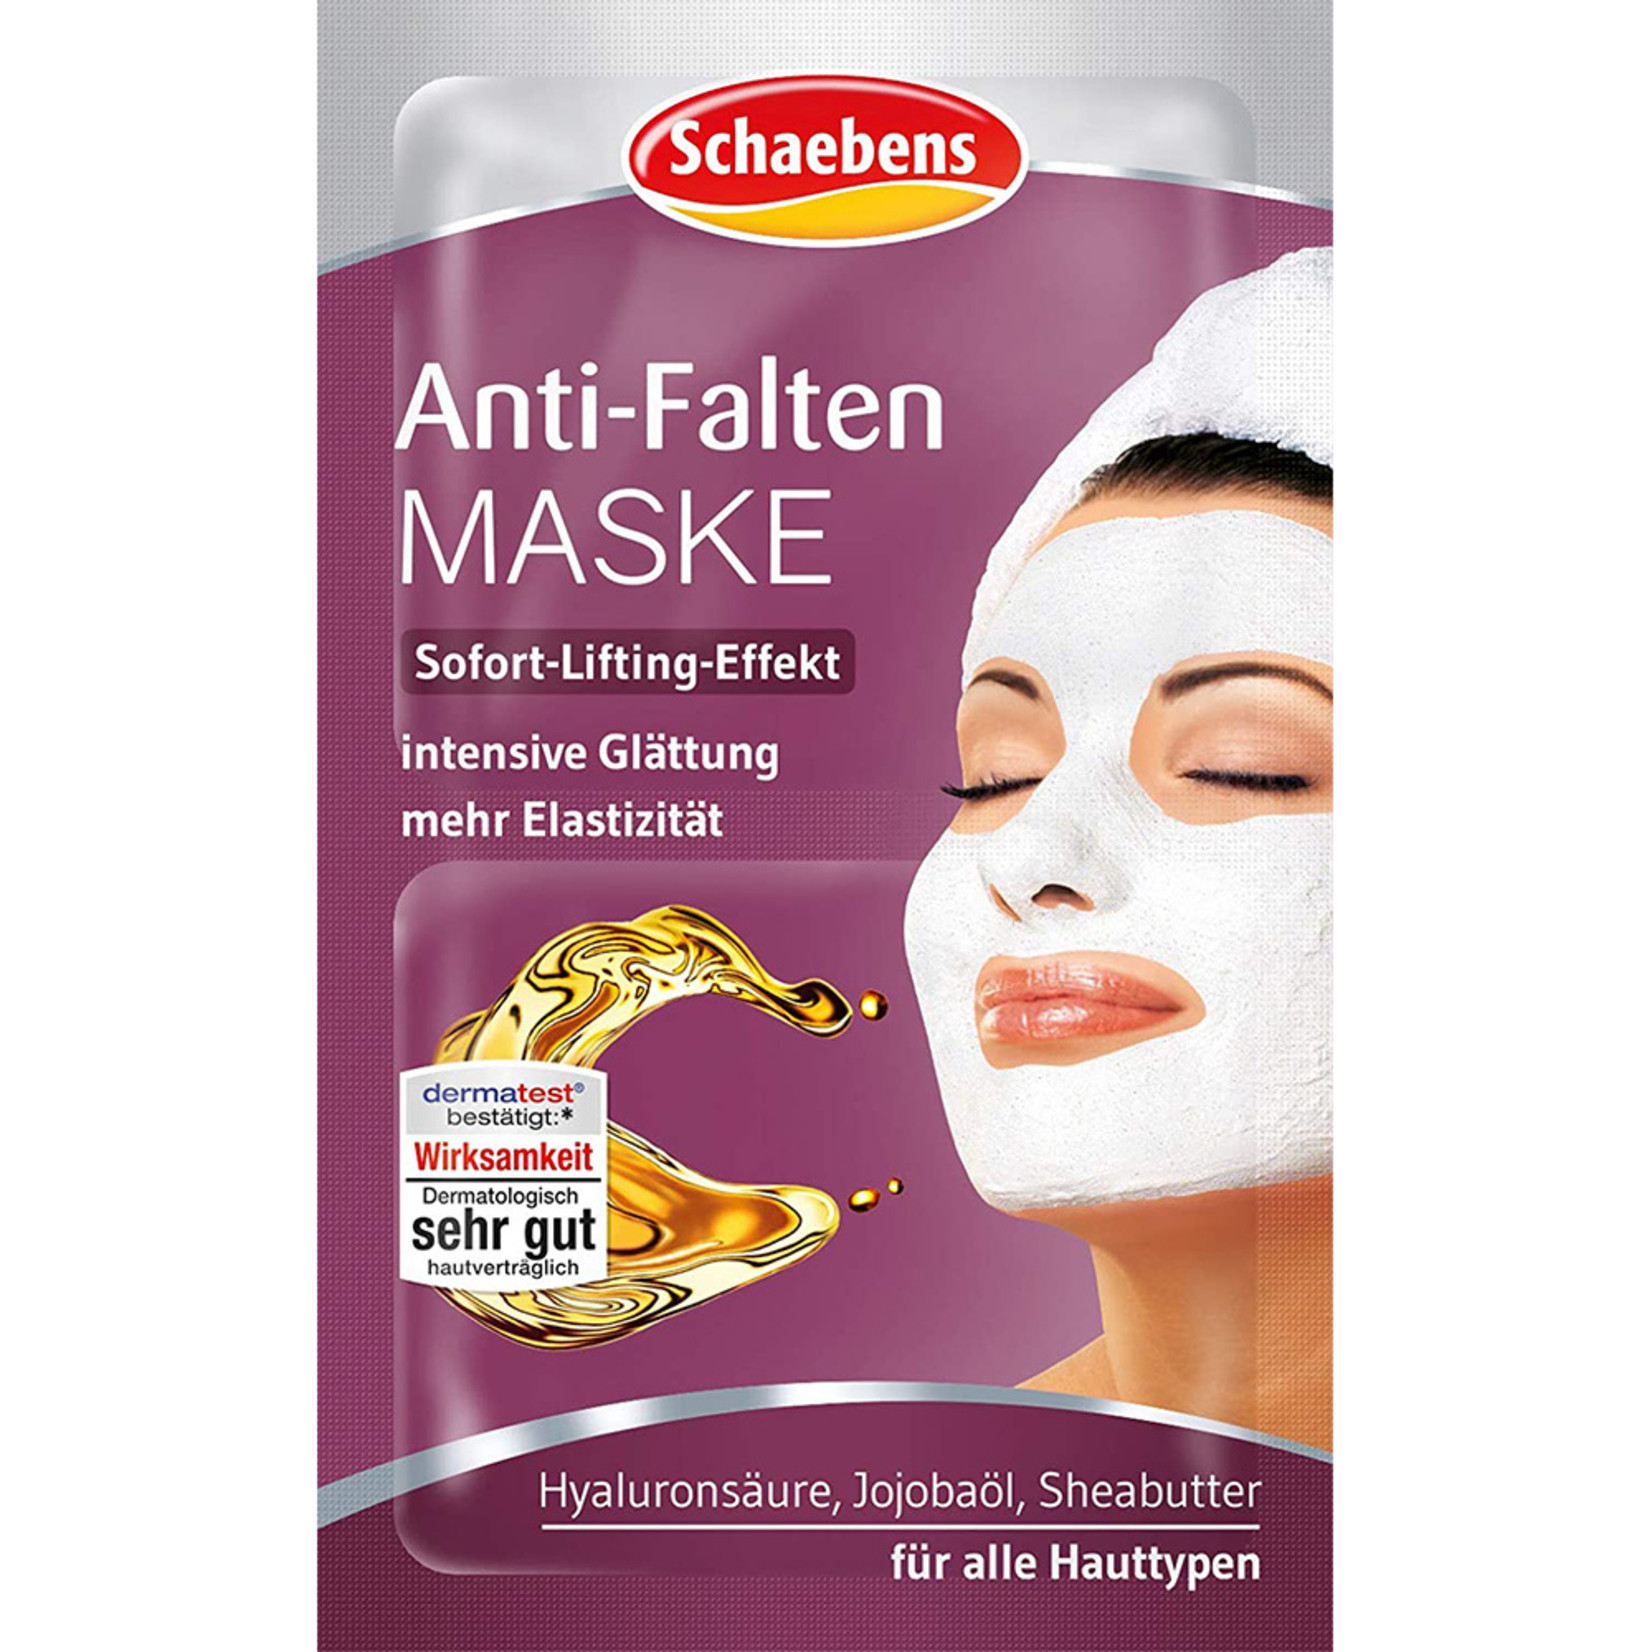 Anti-Aging Mask